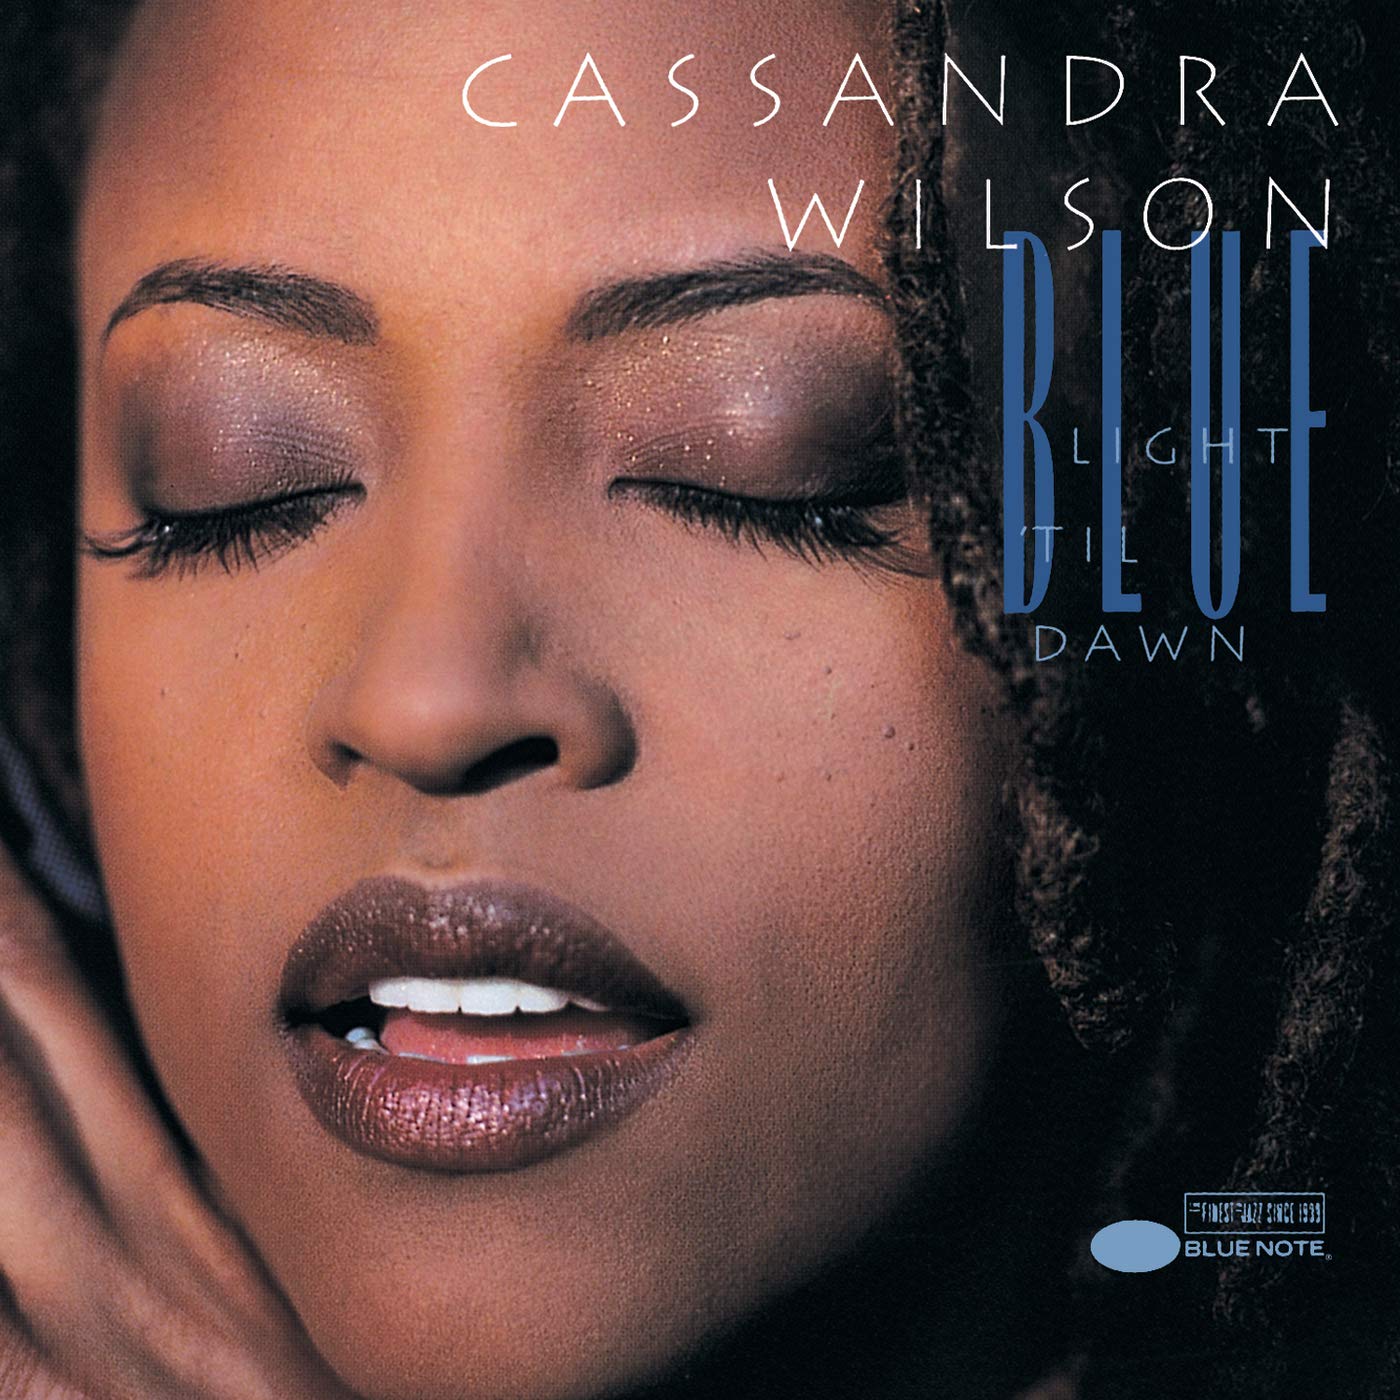 Cassandra Wilson – Blue Light ‘Til Dawn (Blue Note Classic Vinyl Series) [2 LP]